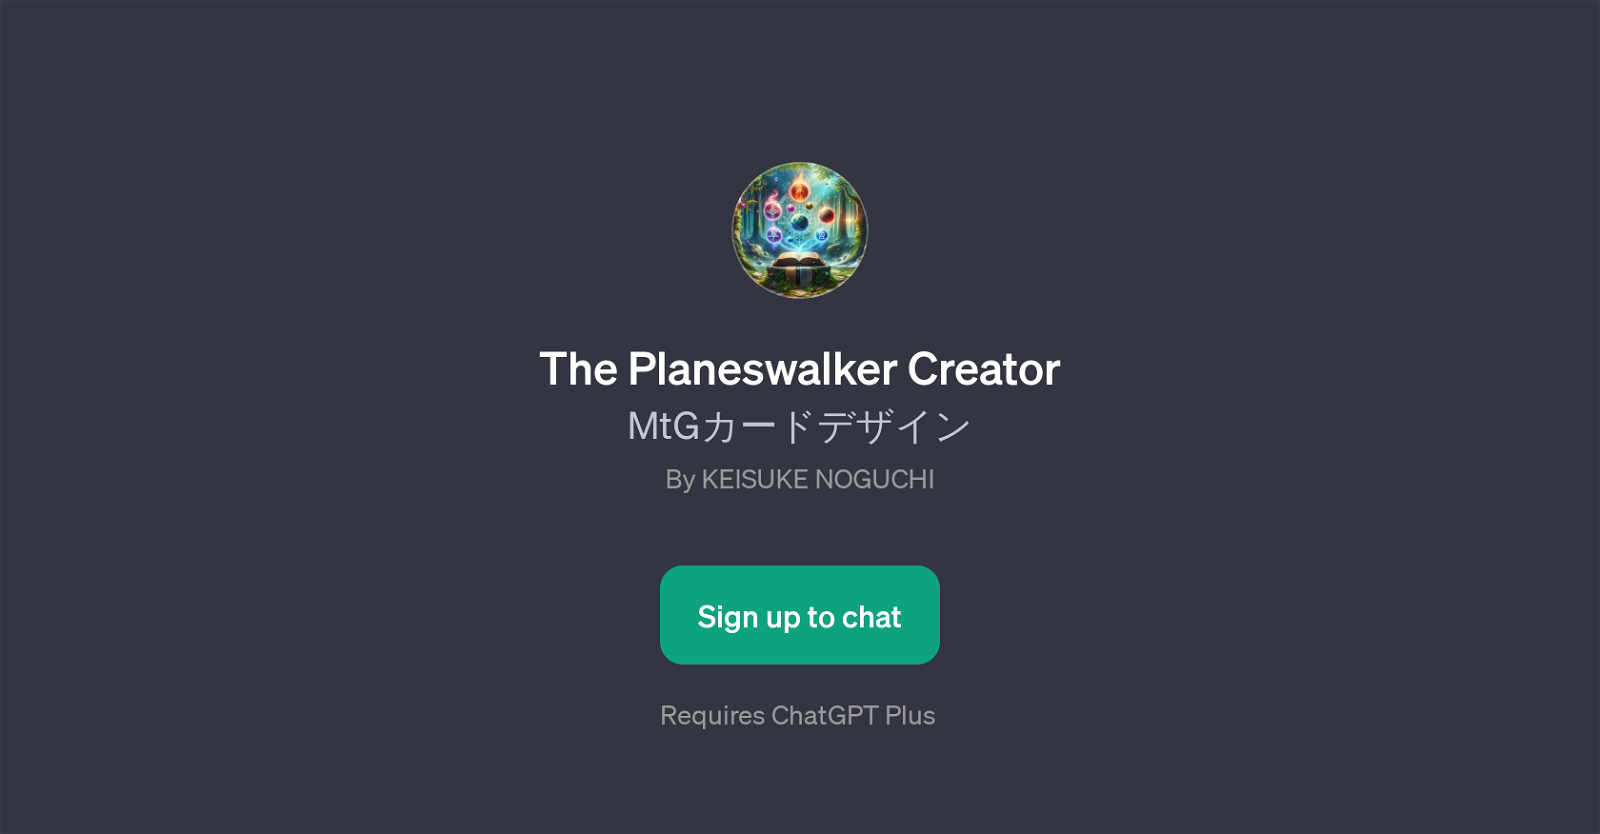 The Planeswalker Creator website